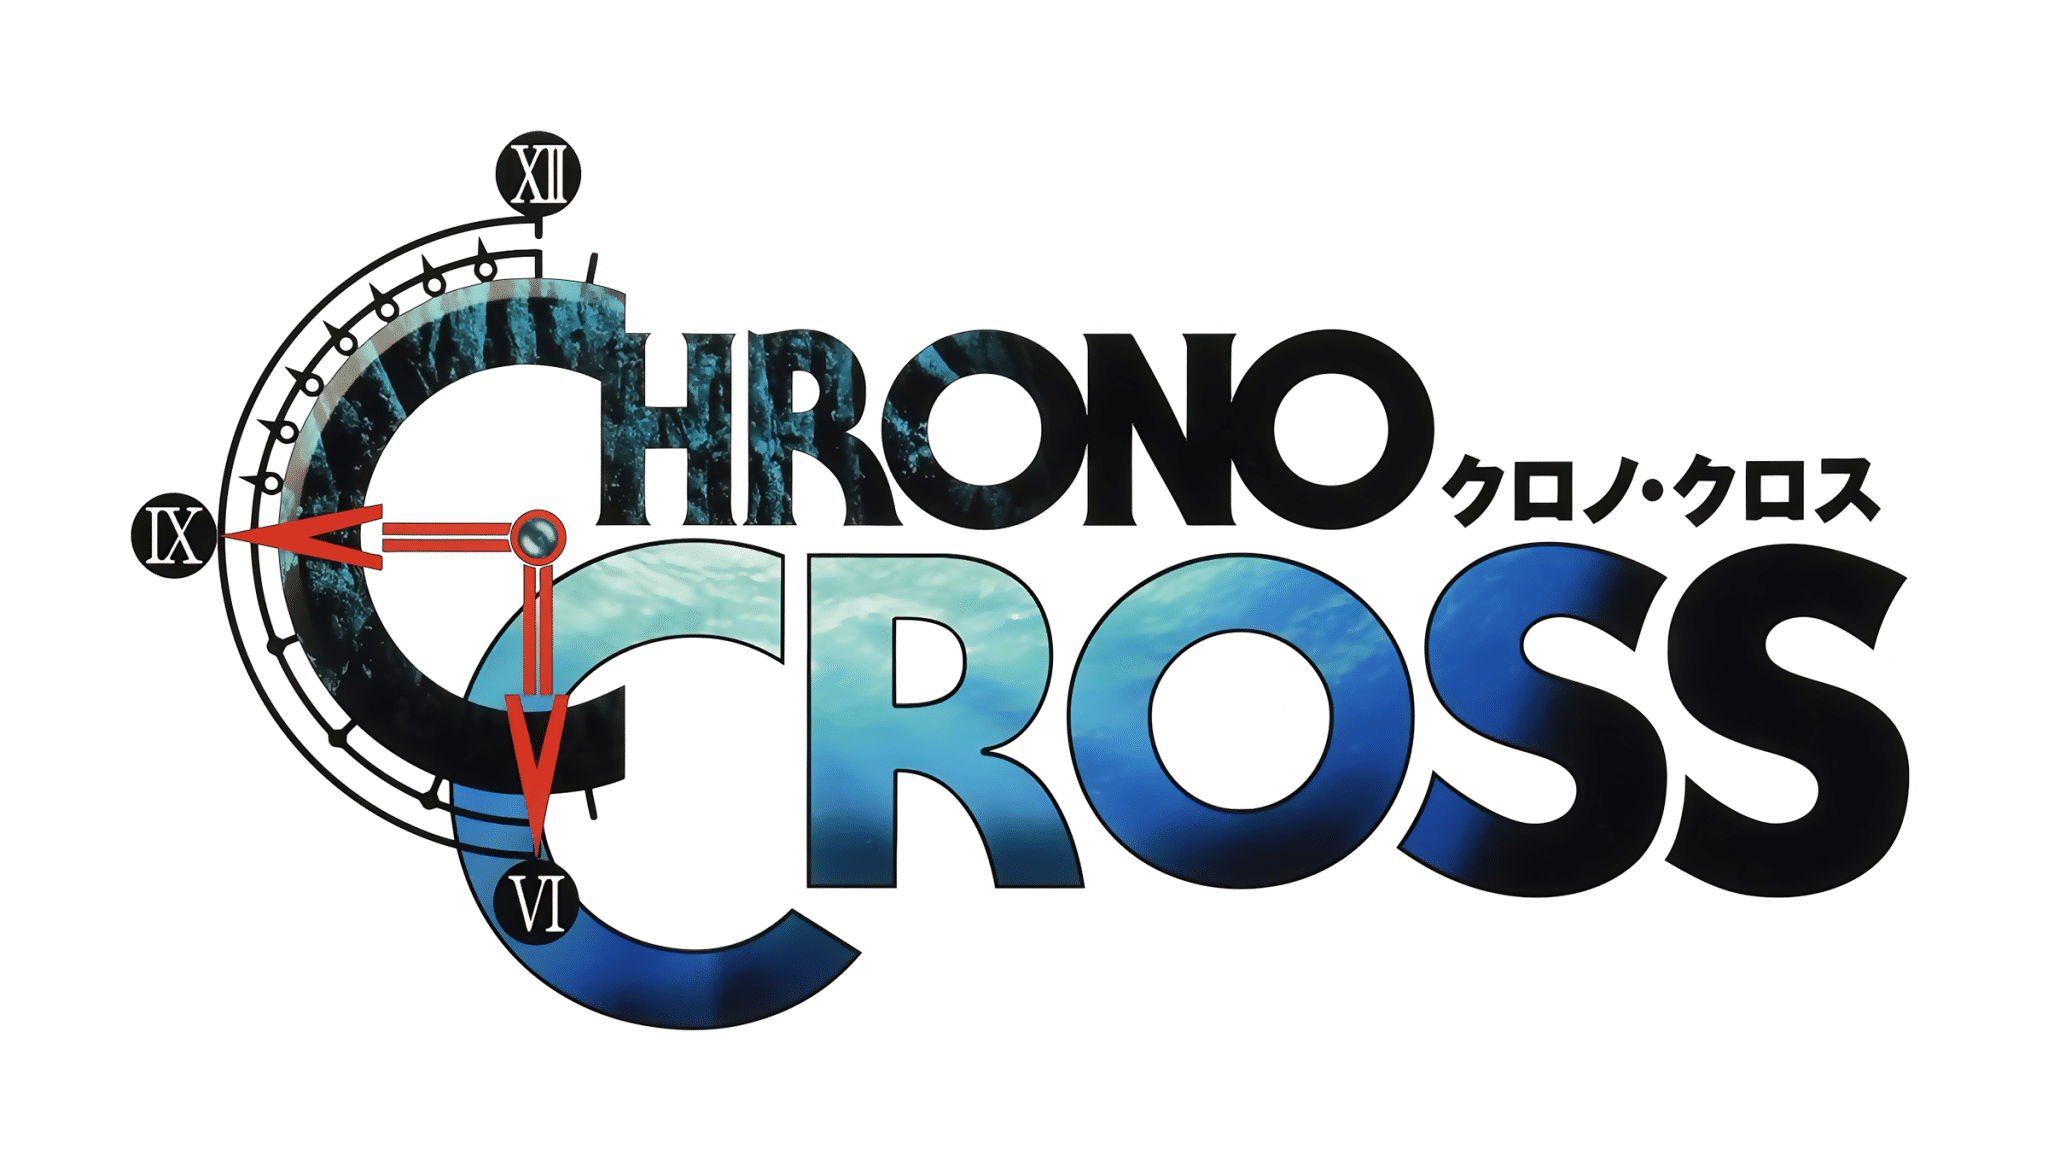 10 momentos mais emocionantes de Chrono Trigger!